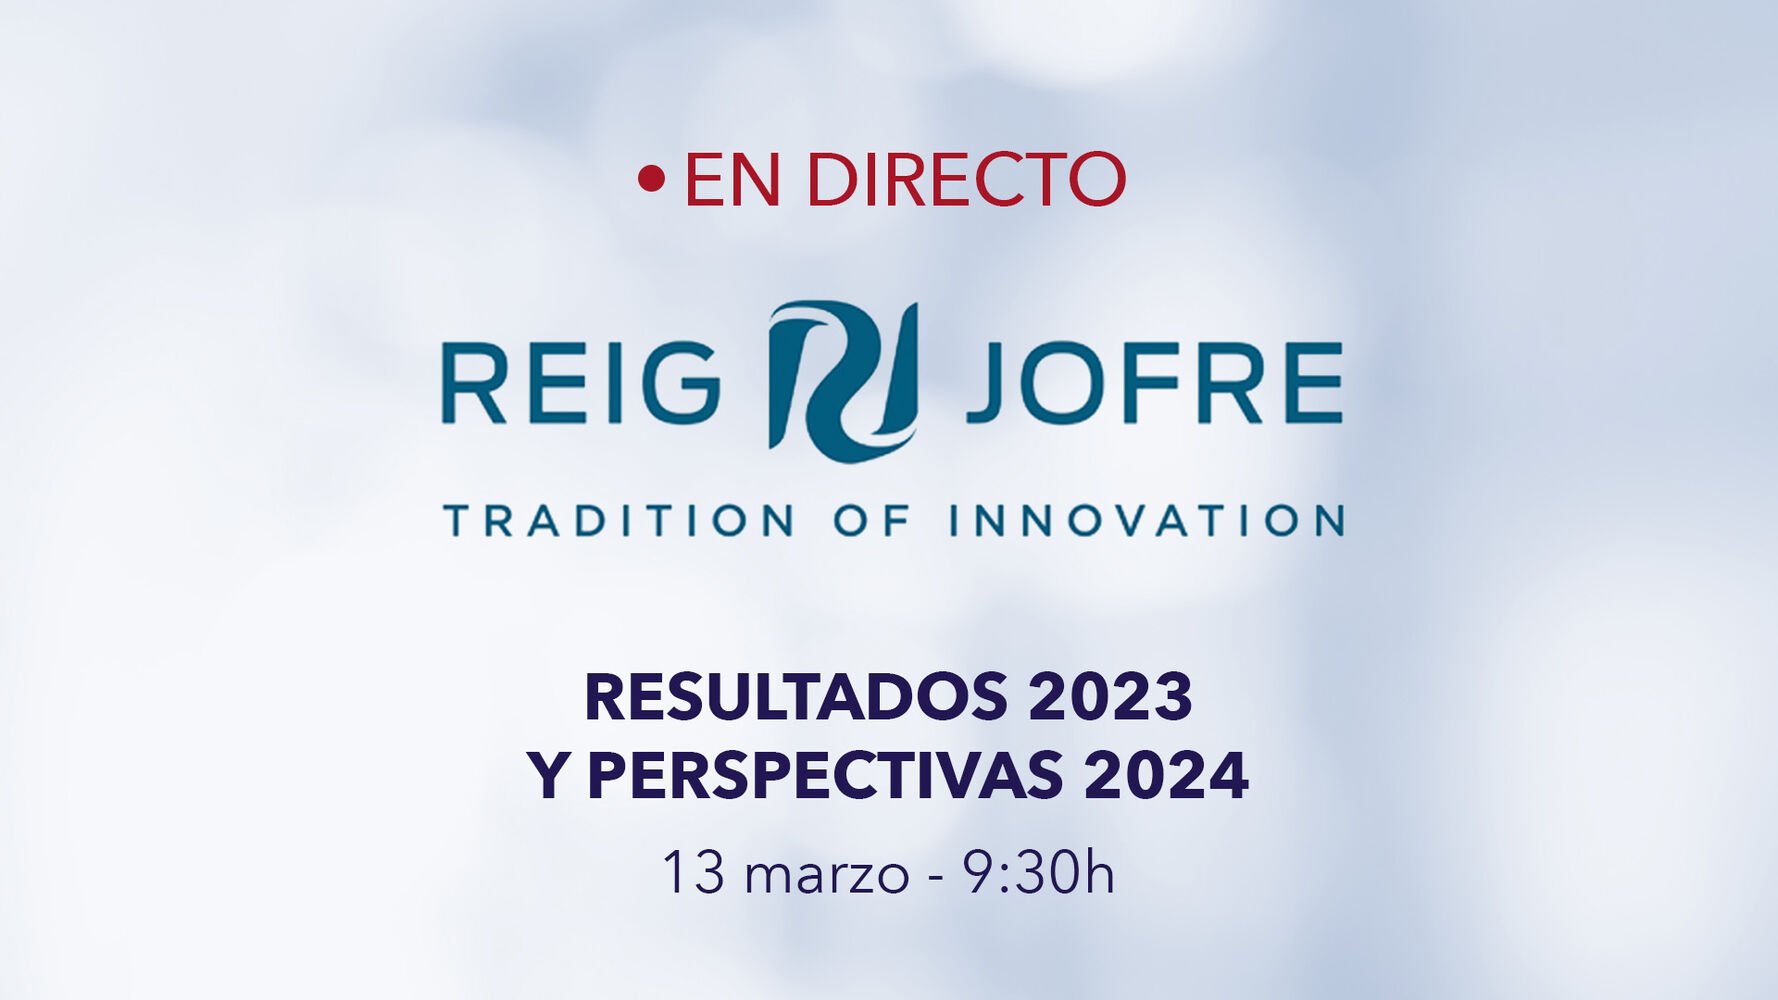 Reig Jofre presenta en directo la estrategia de negocio y resultados 2023.